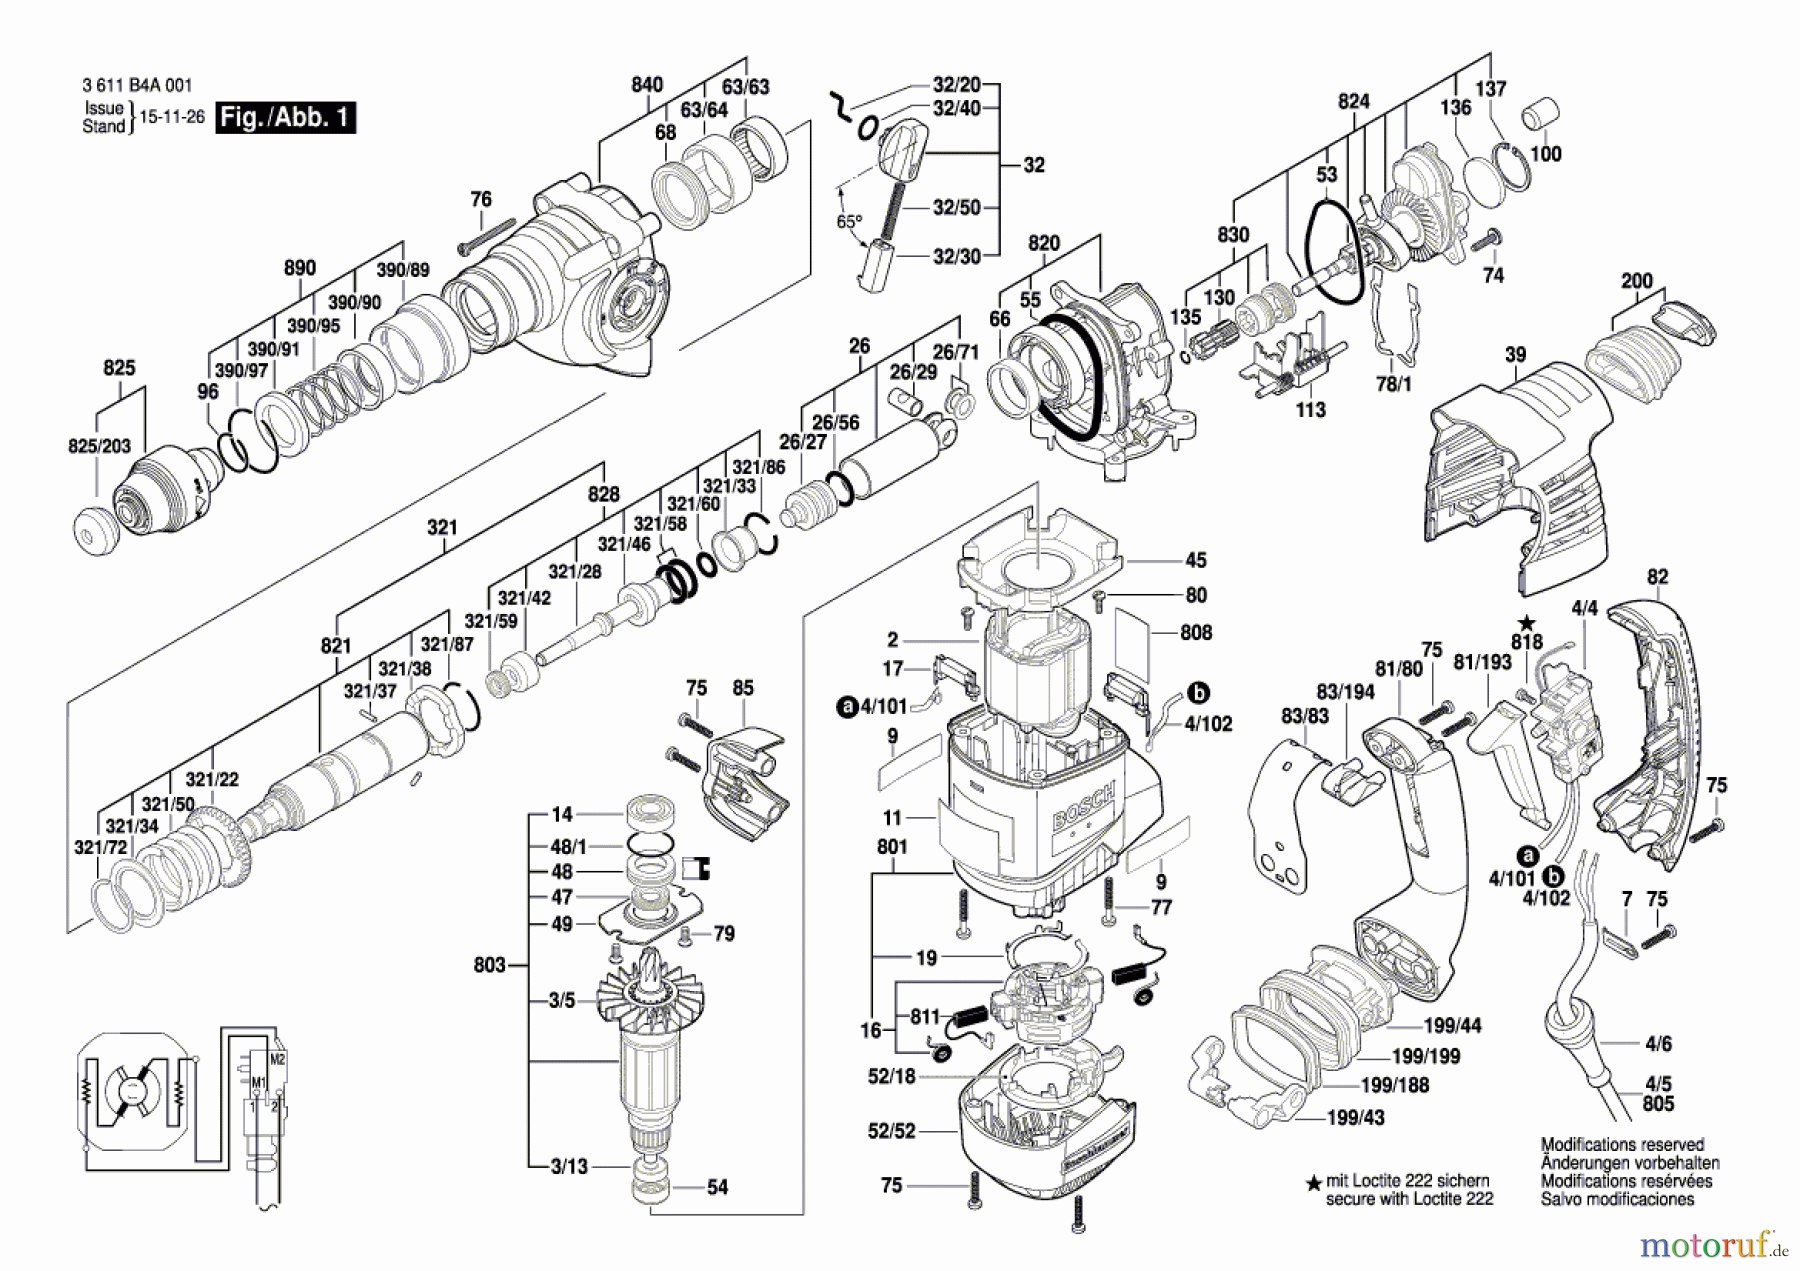  Bosch Werkzeug Bohrhammer GBH 4-28 DFR Seite 1